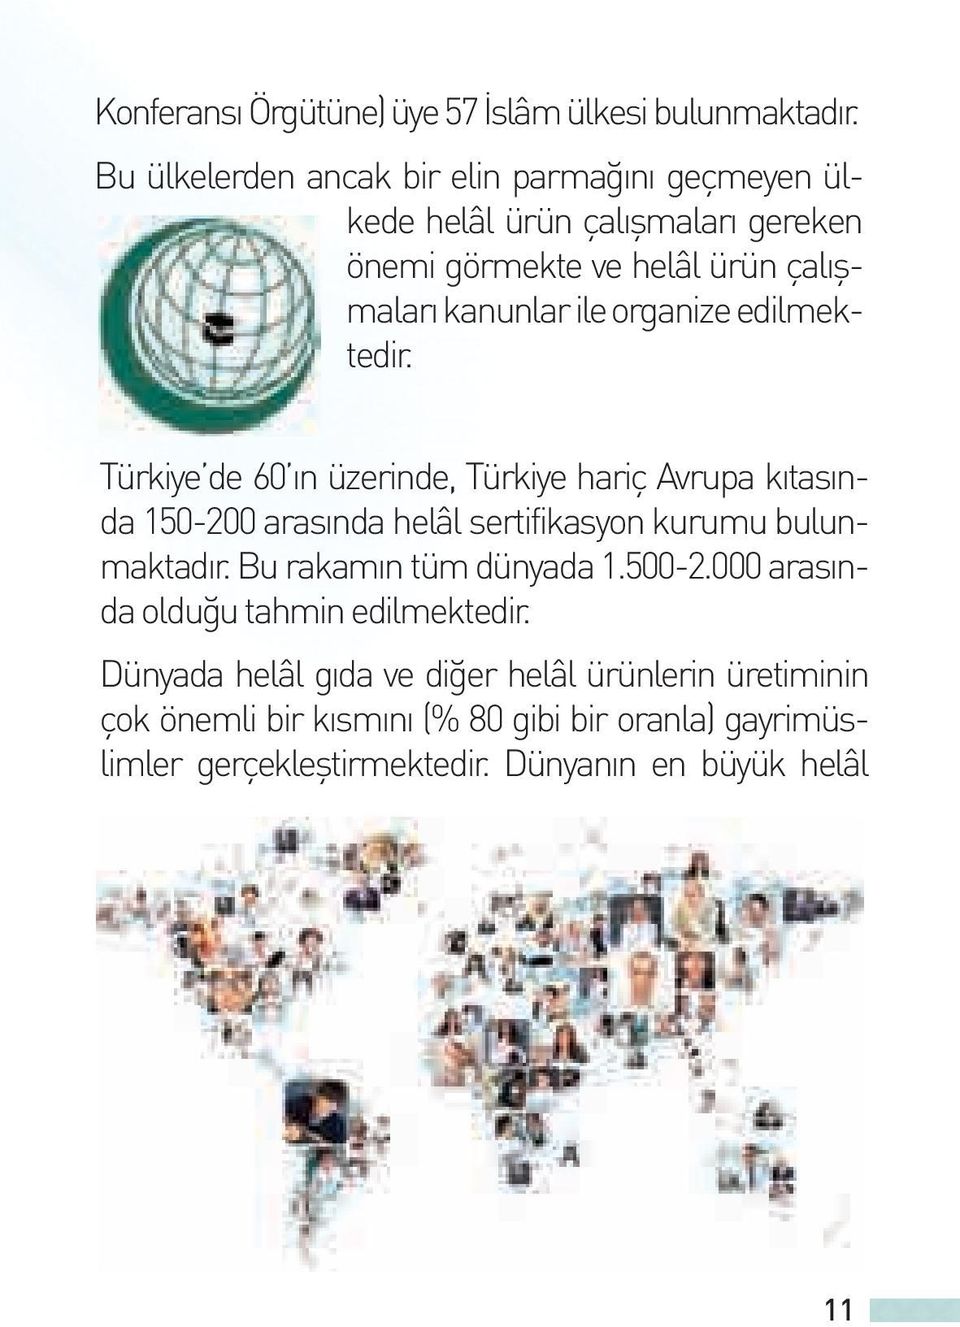 organize edilmektedir. Türkiye de 60 ın üzerinde, Türkiye hariç Avrupa kıtasında 150-200 arasında helâl sertifikasyon kurumu bulunmaktadır.